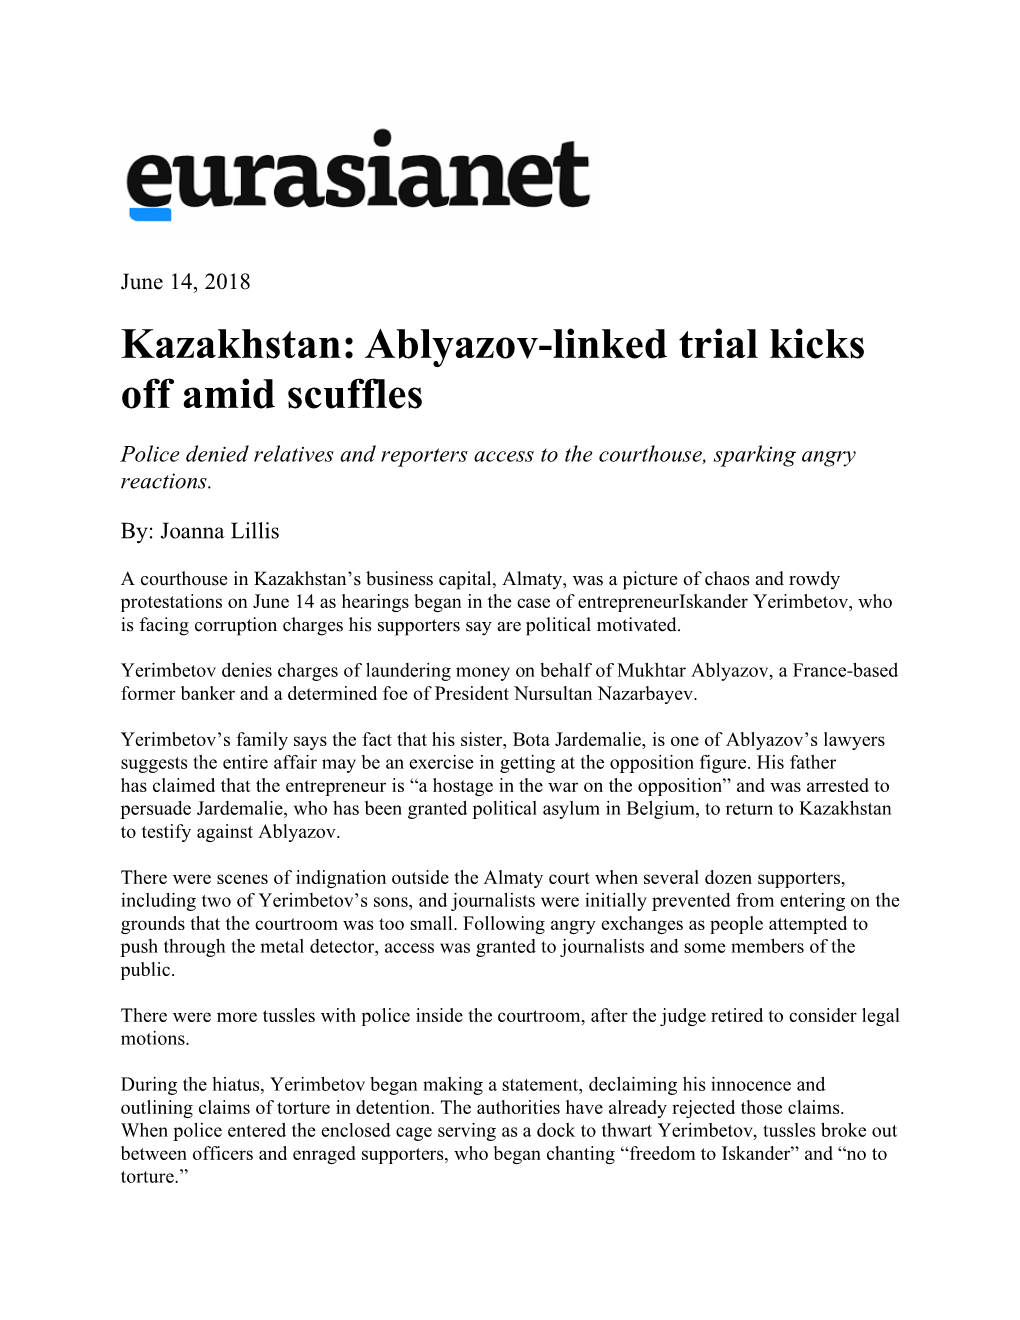 Abalyazov-Linked Trial Kicks Off Amid Scuffles